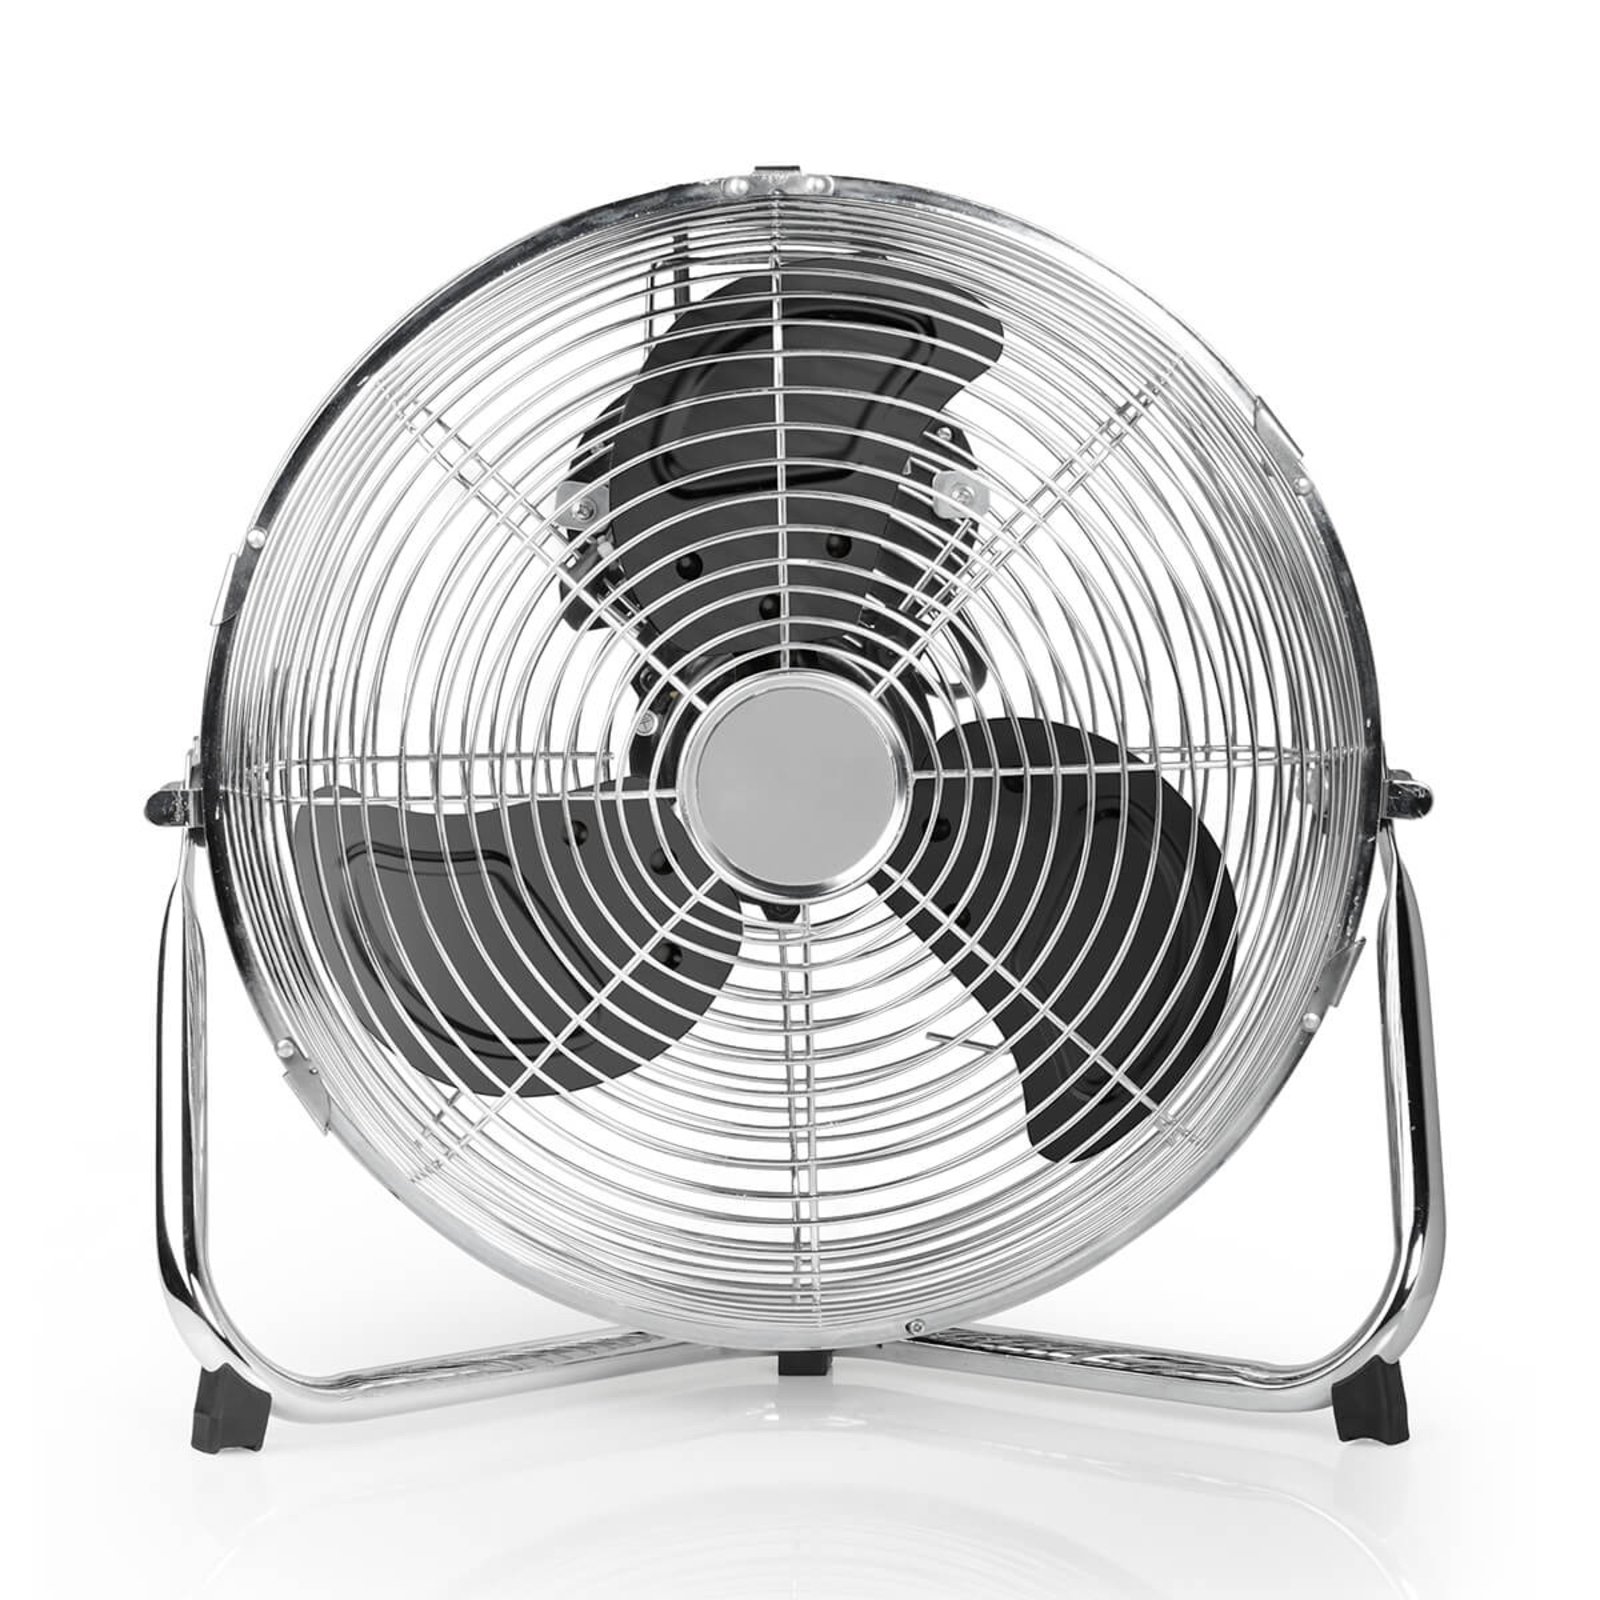 VE5933 three-speed pedestal fan